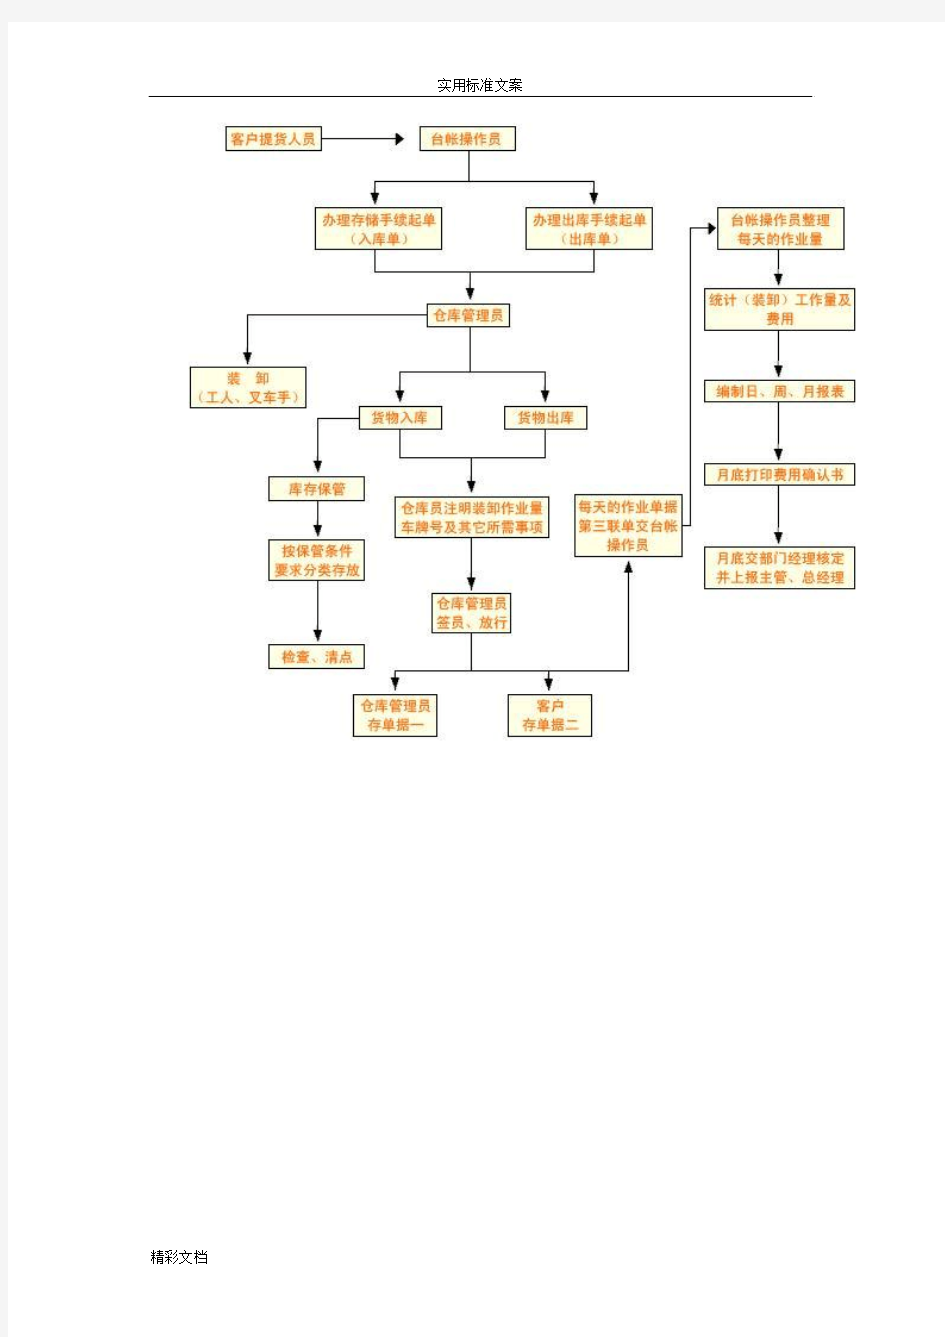 仓库管理系统仓库地流程图[2]